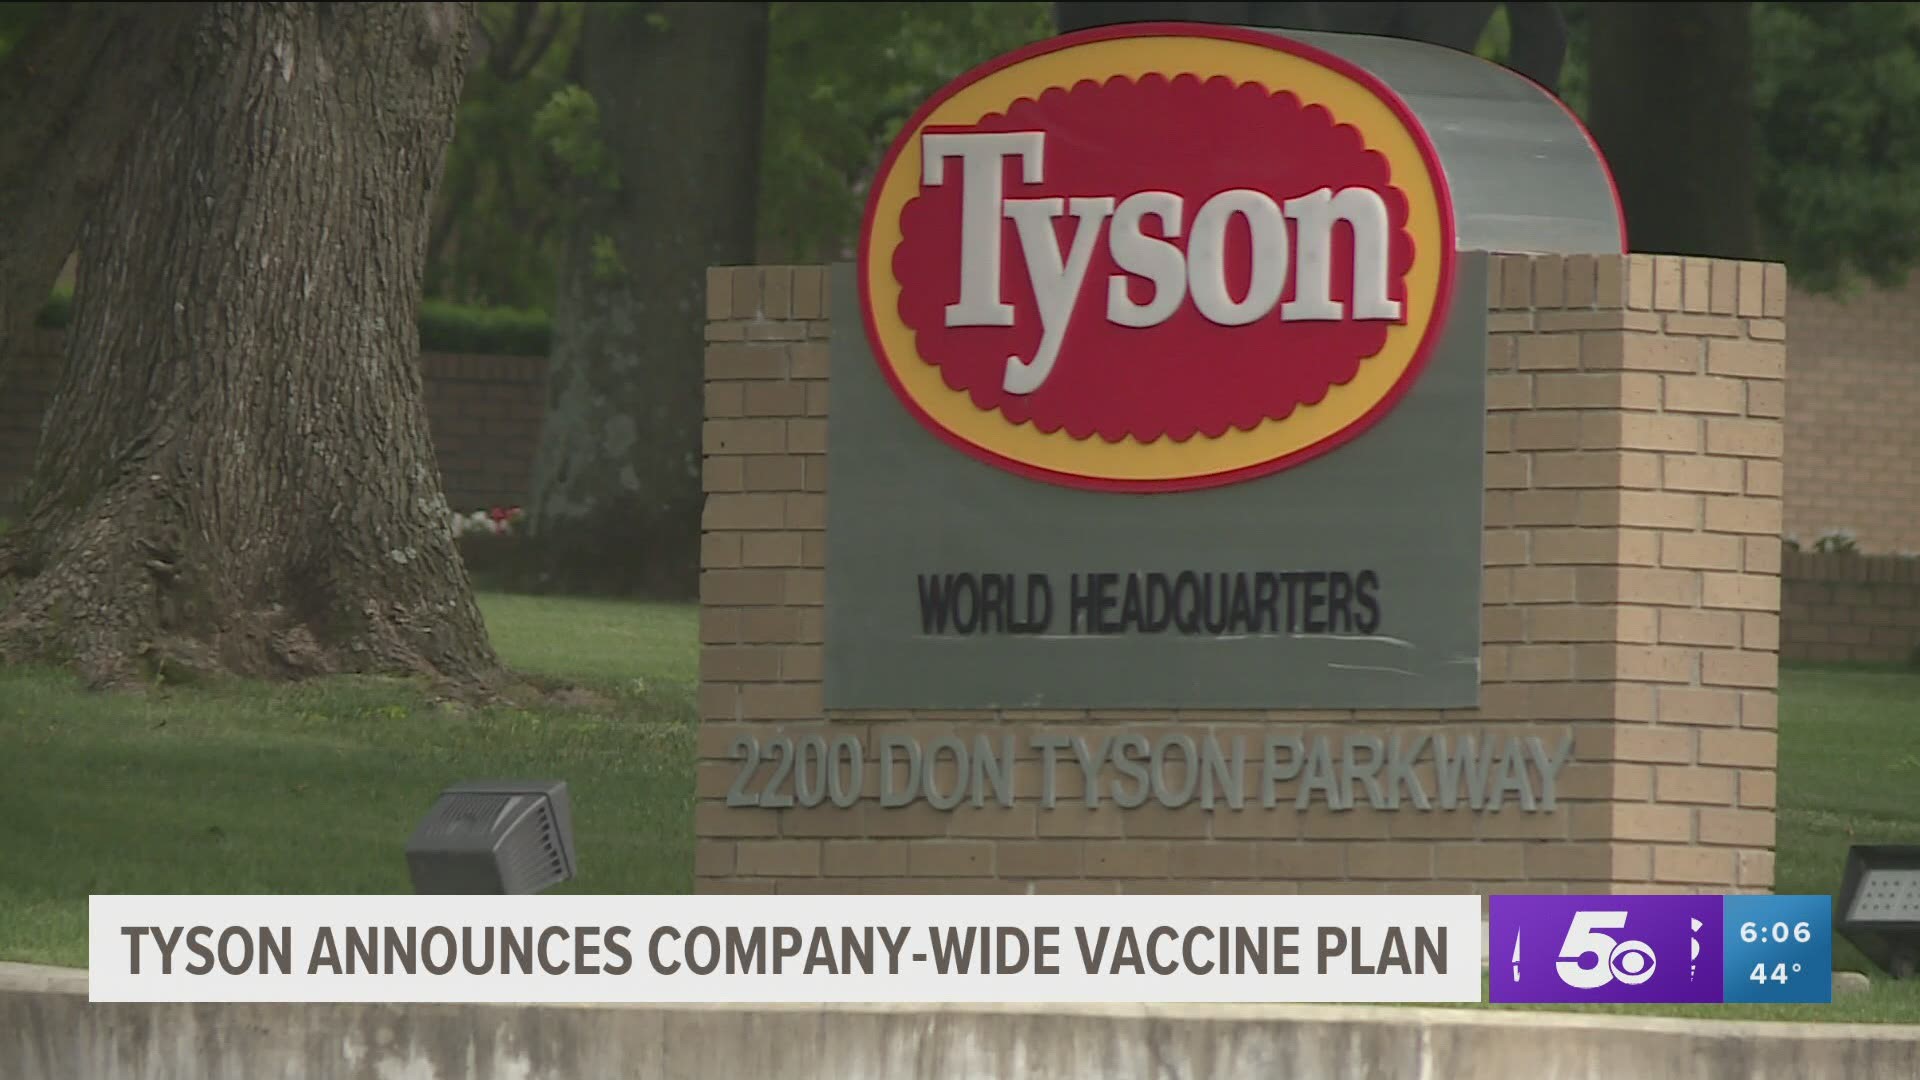 Tyson announces company-wide COVID-19 vaccine plan